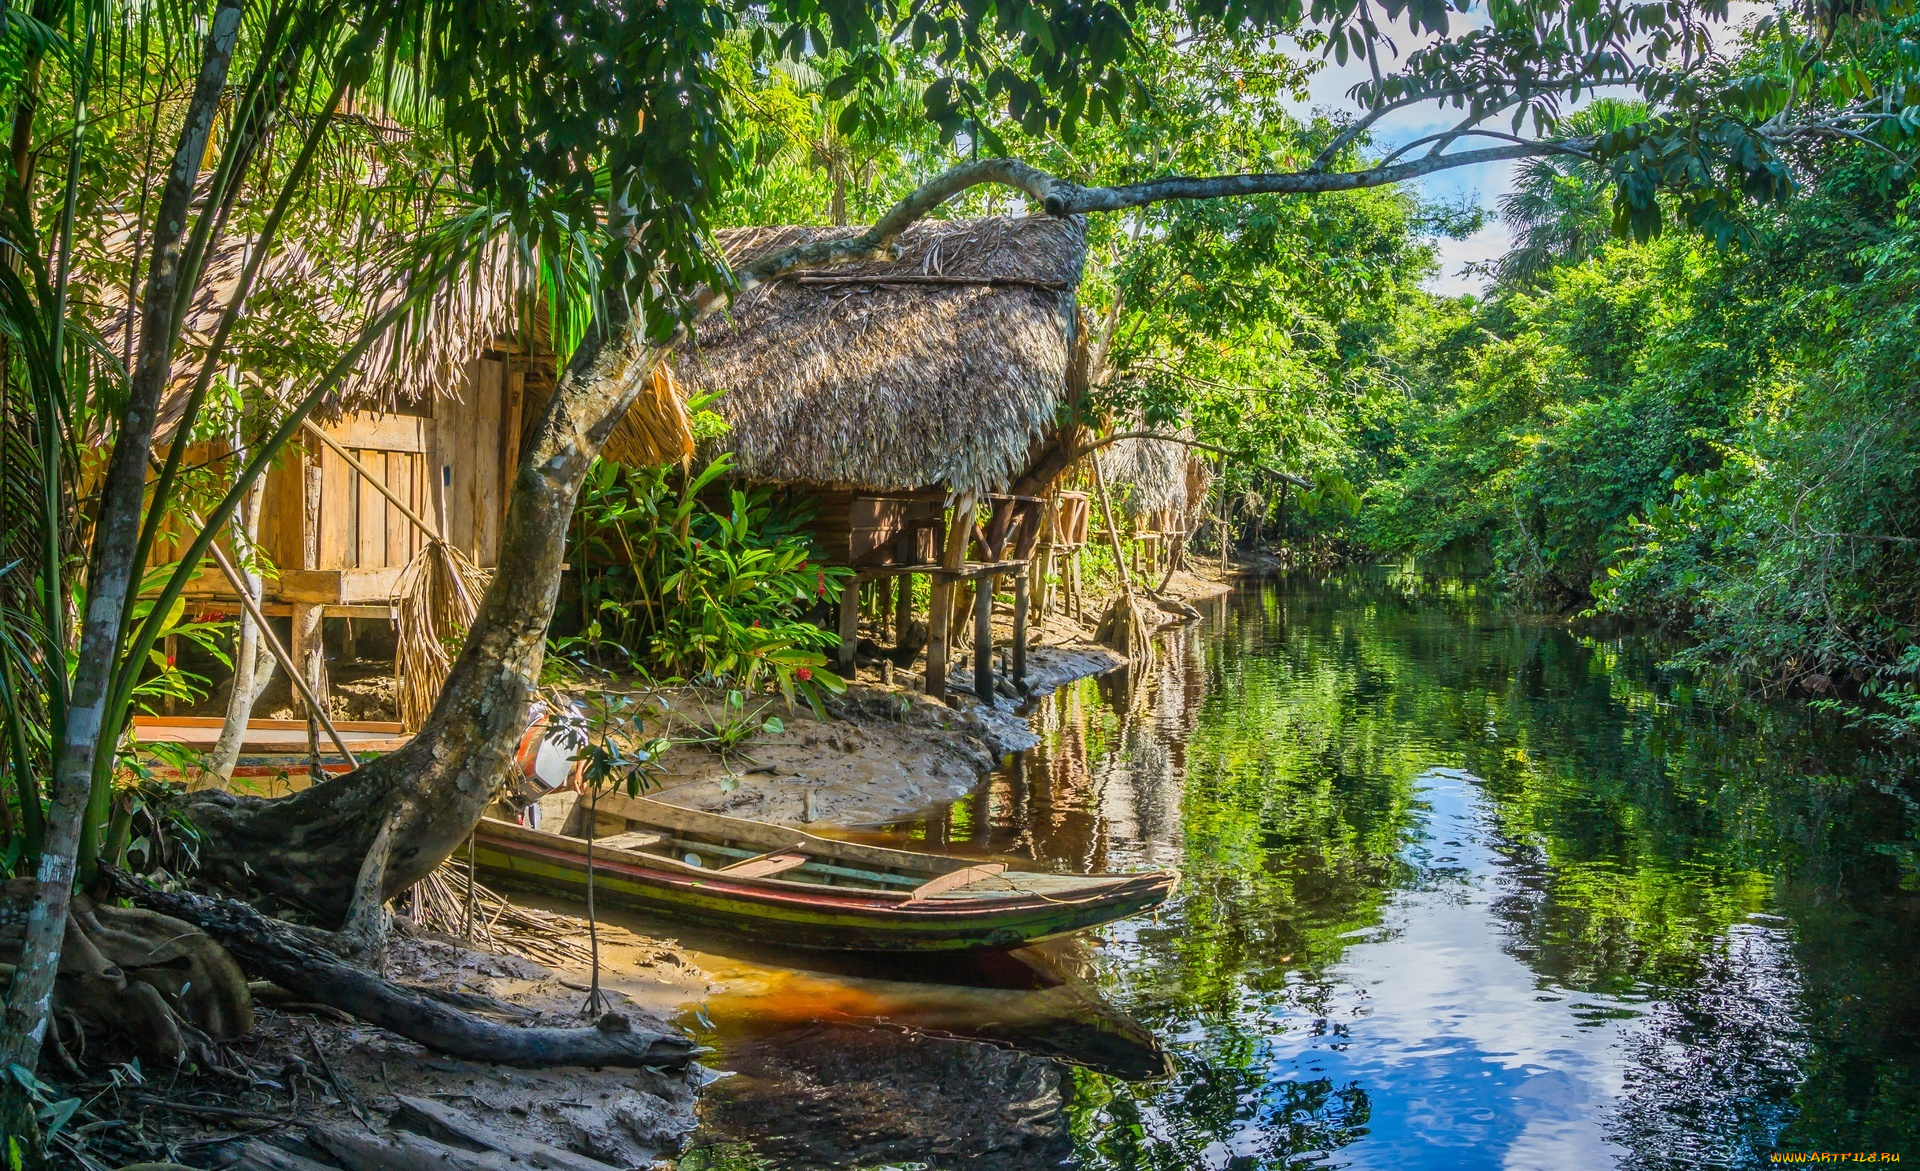 ориноко, , венесуэла, корабли, лодки, , шлюпки, лодка, река, хижина, дом, джунгли